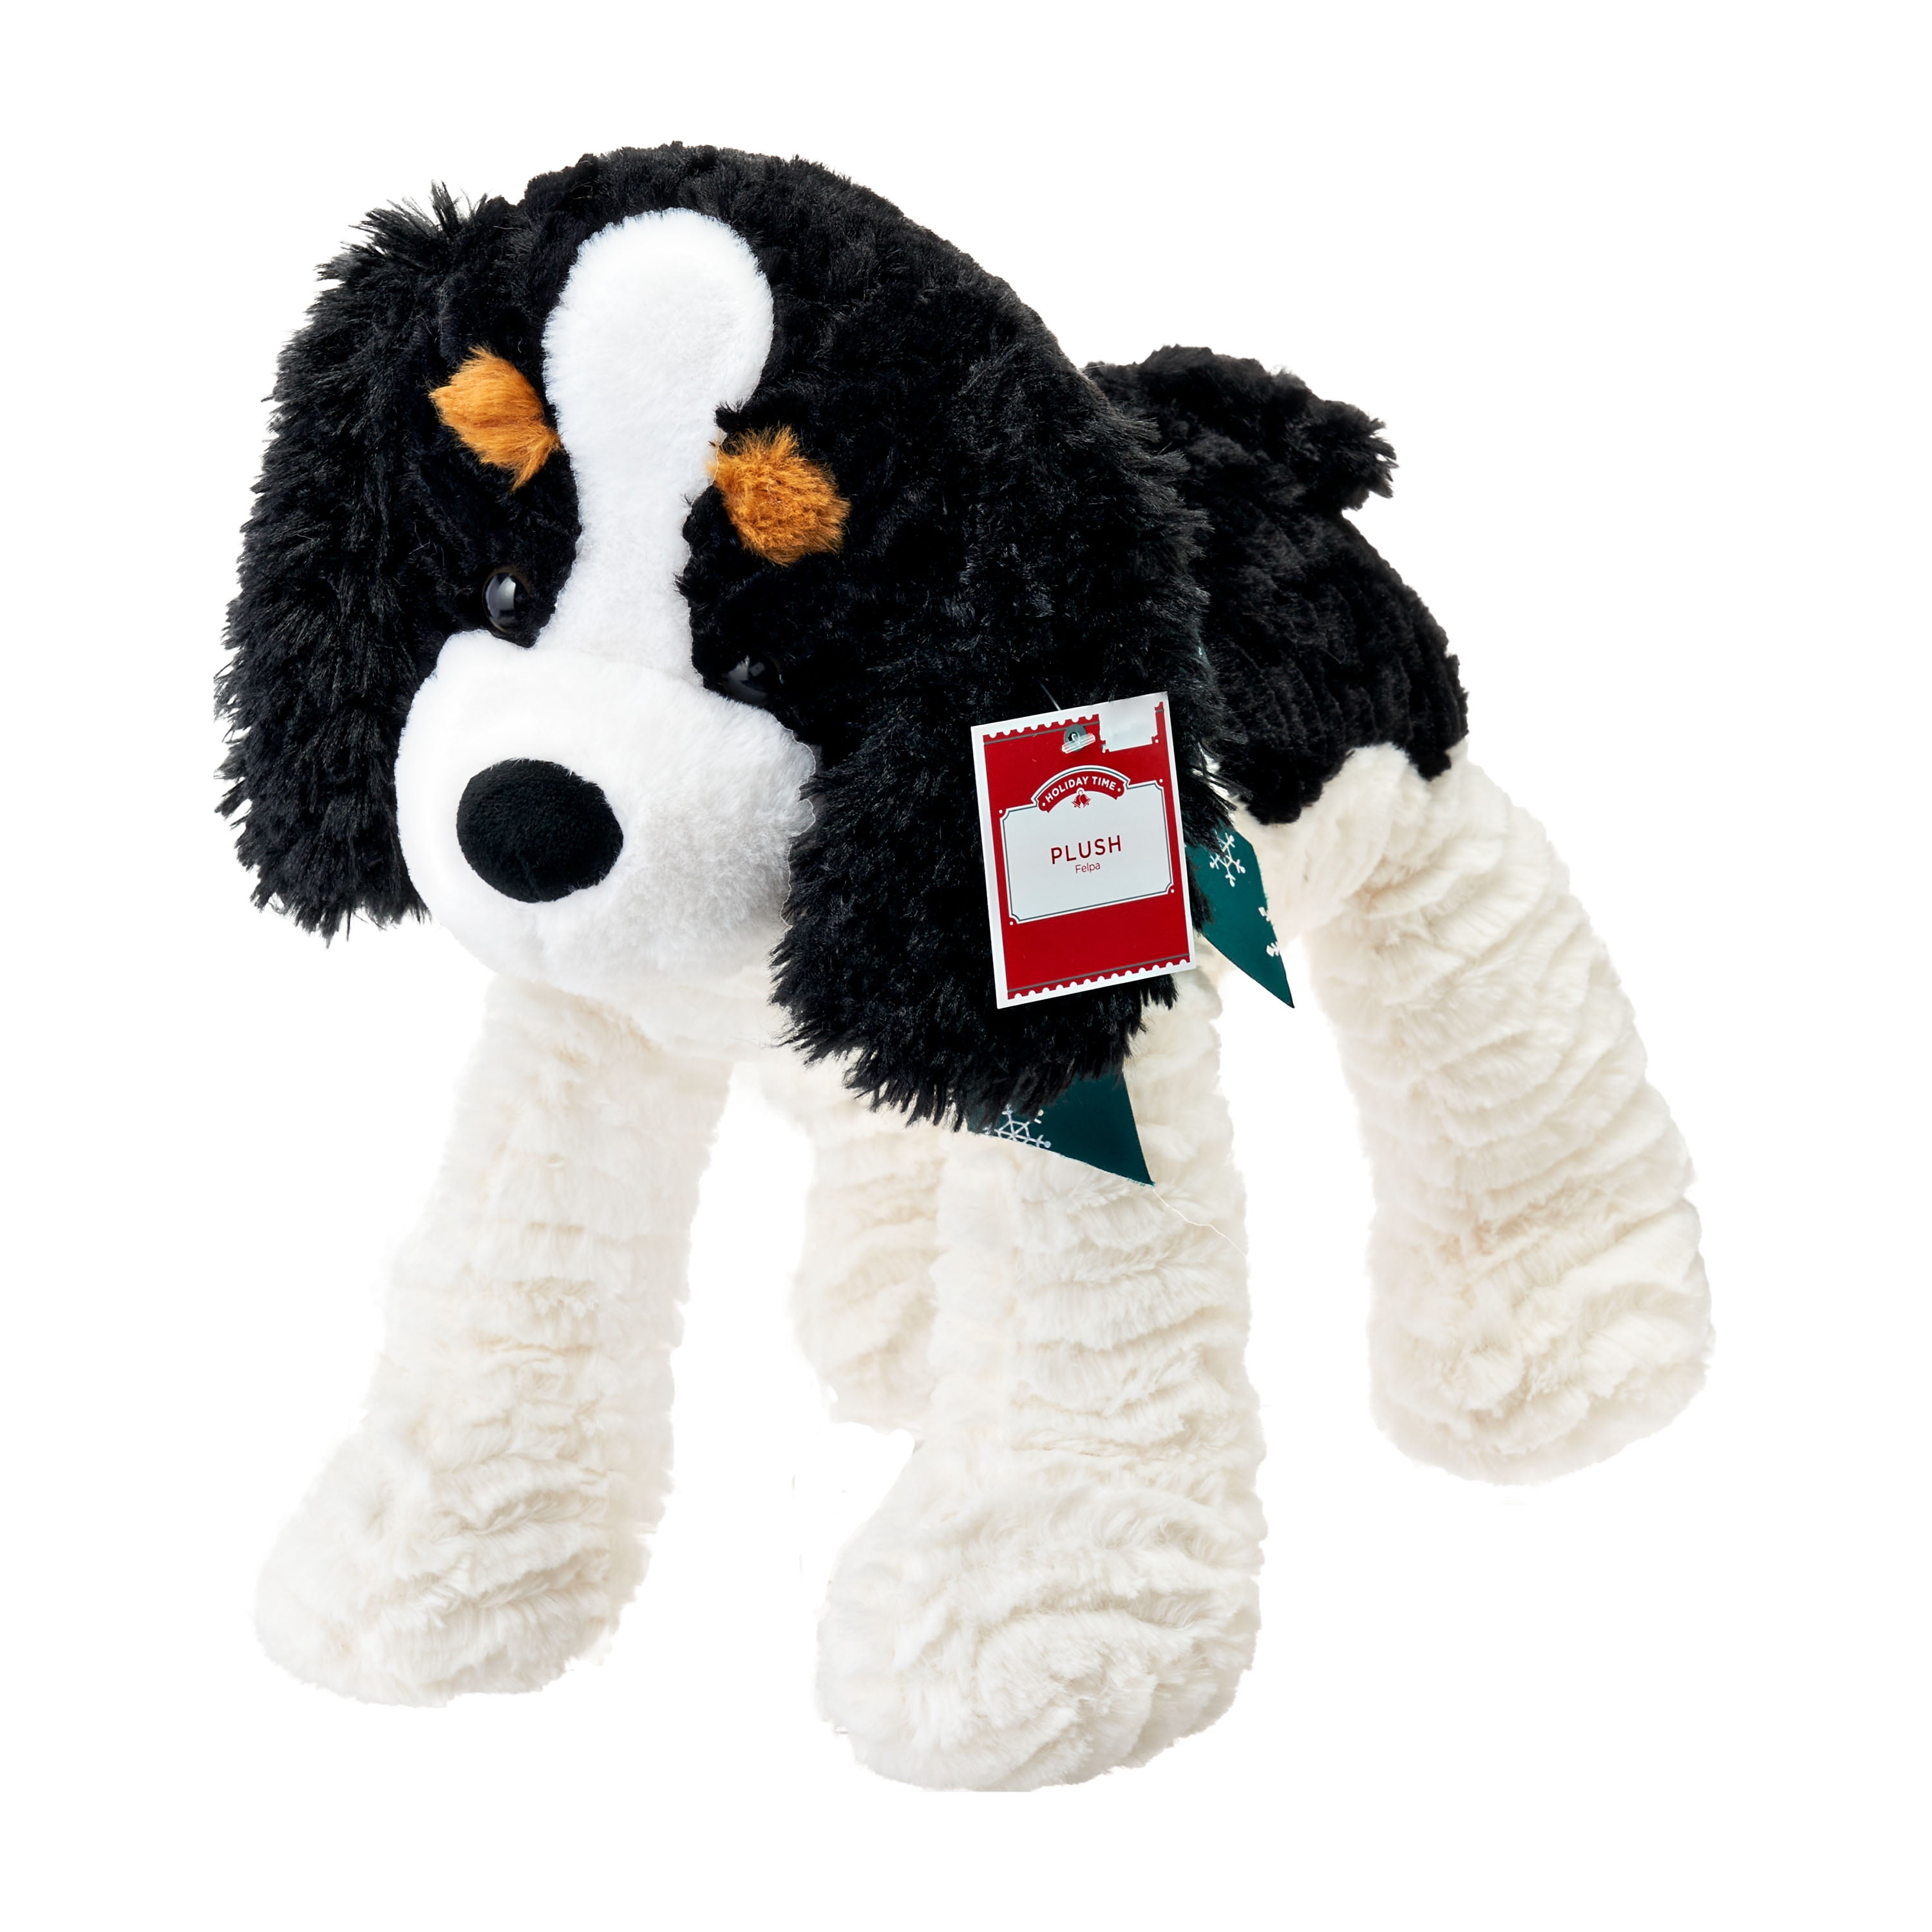 Nat & Jules Animalcraft BERNESE MOUNTAIN DOG Plush Stuffed Toy Small 5.5" 